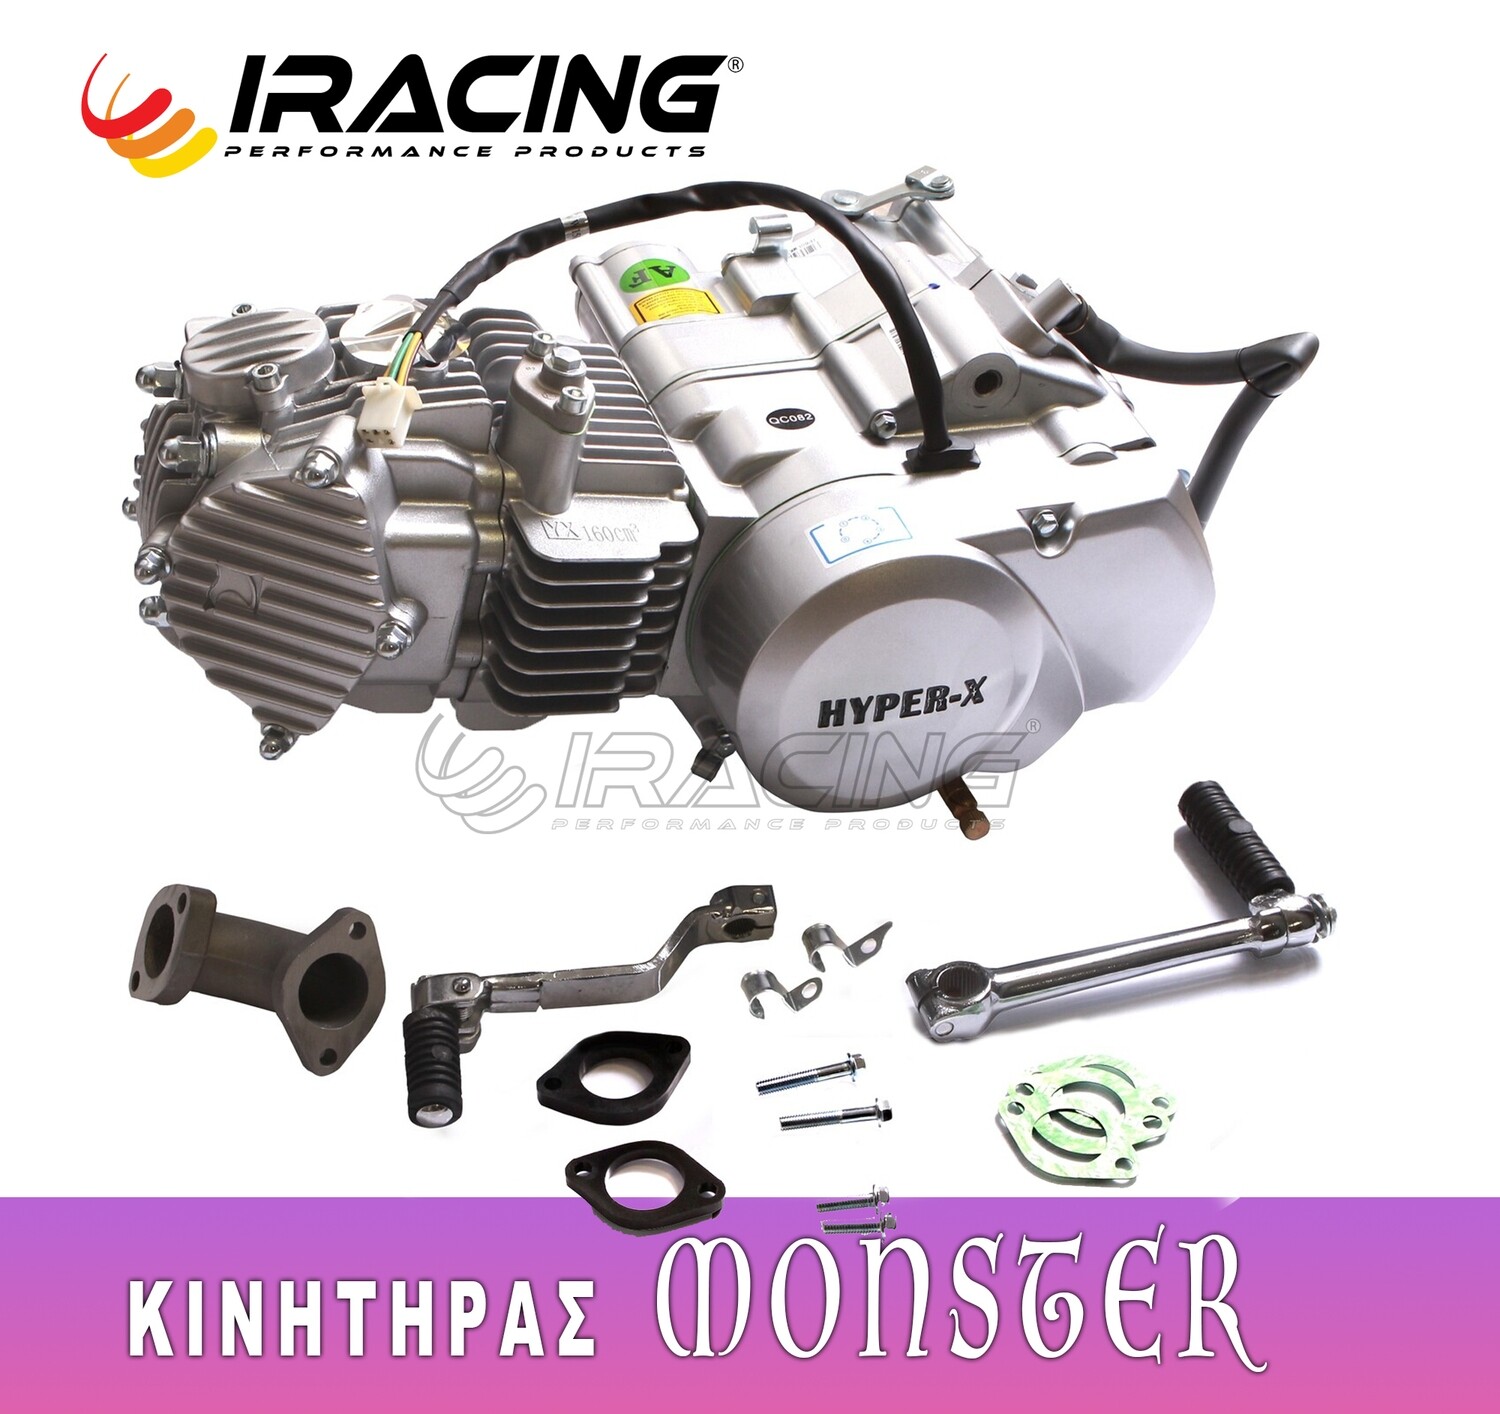 ΚΙΝΗΤΗΡΑΣ MONSTER KSR YX RACING ENGINE HYPER X 160cc 1P60FMK